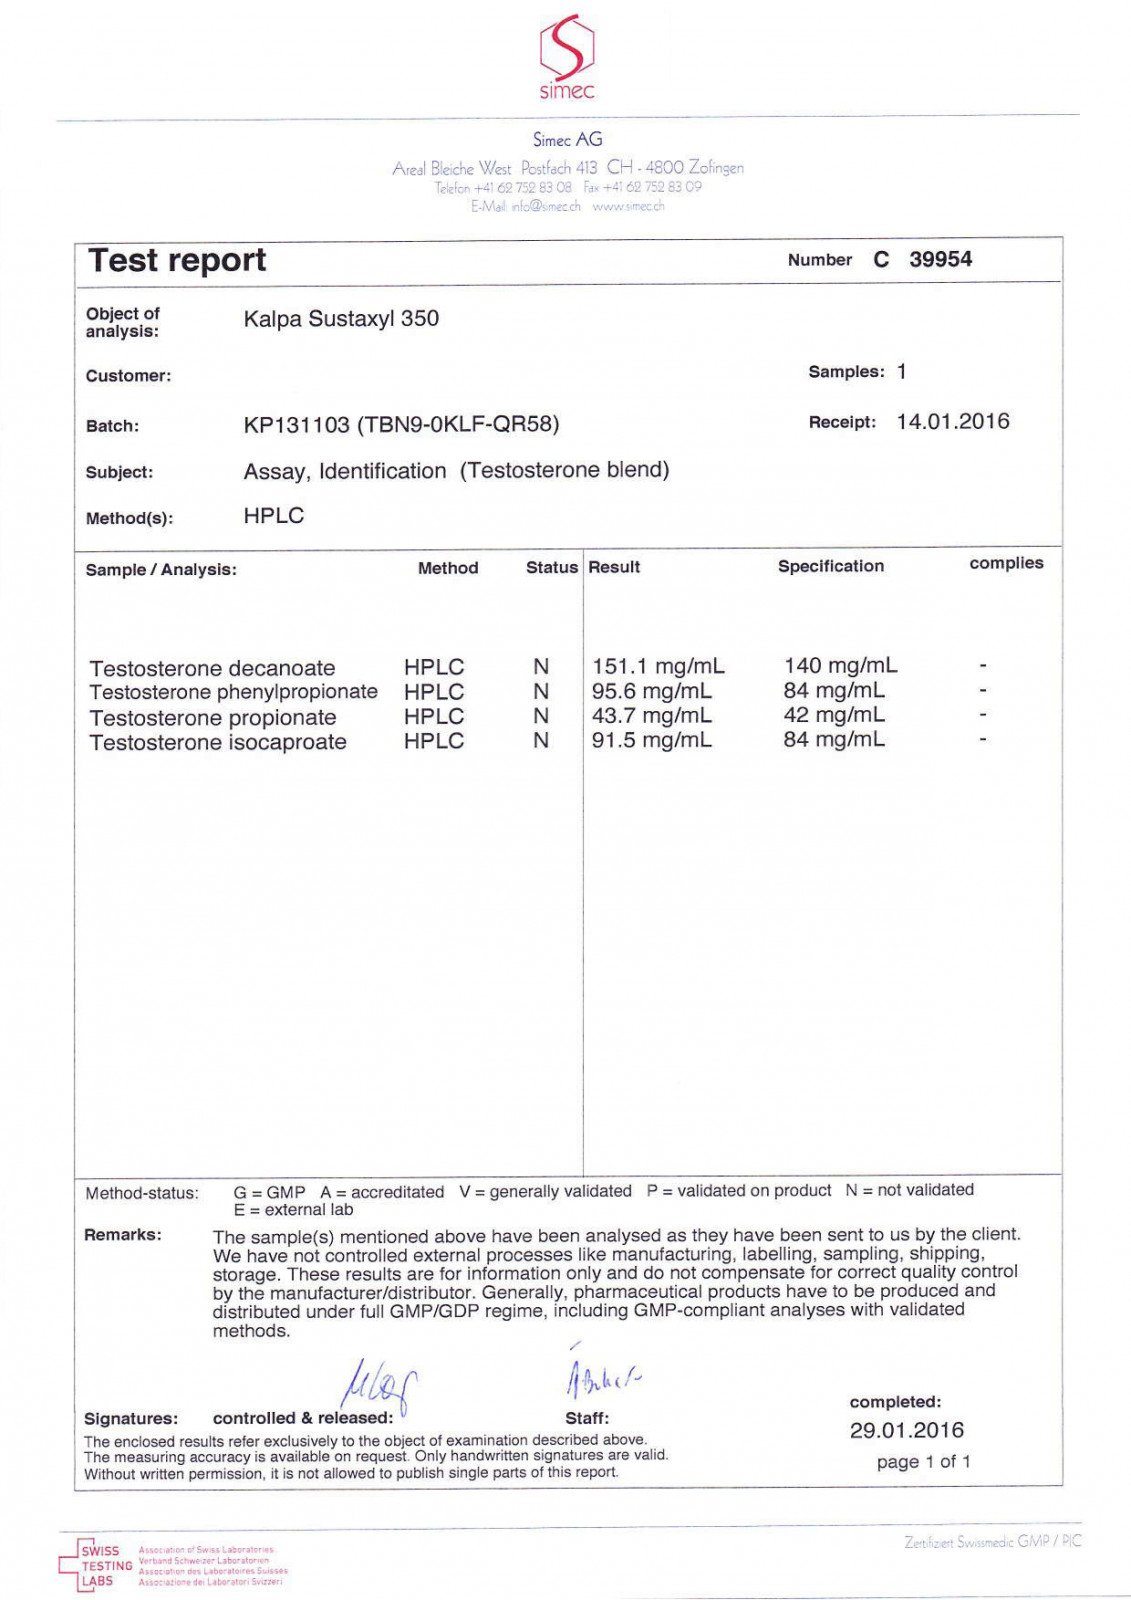 sustaxyl lab test result